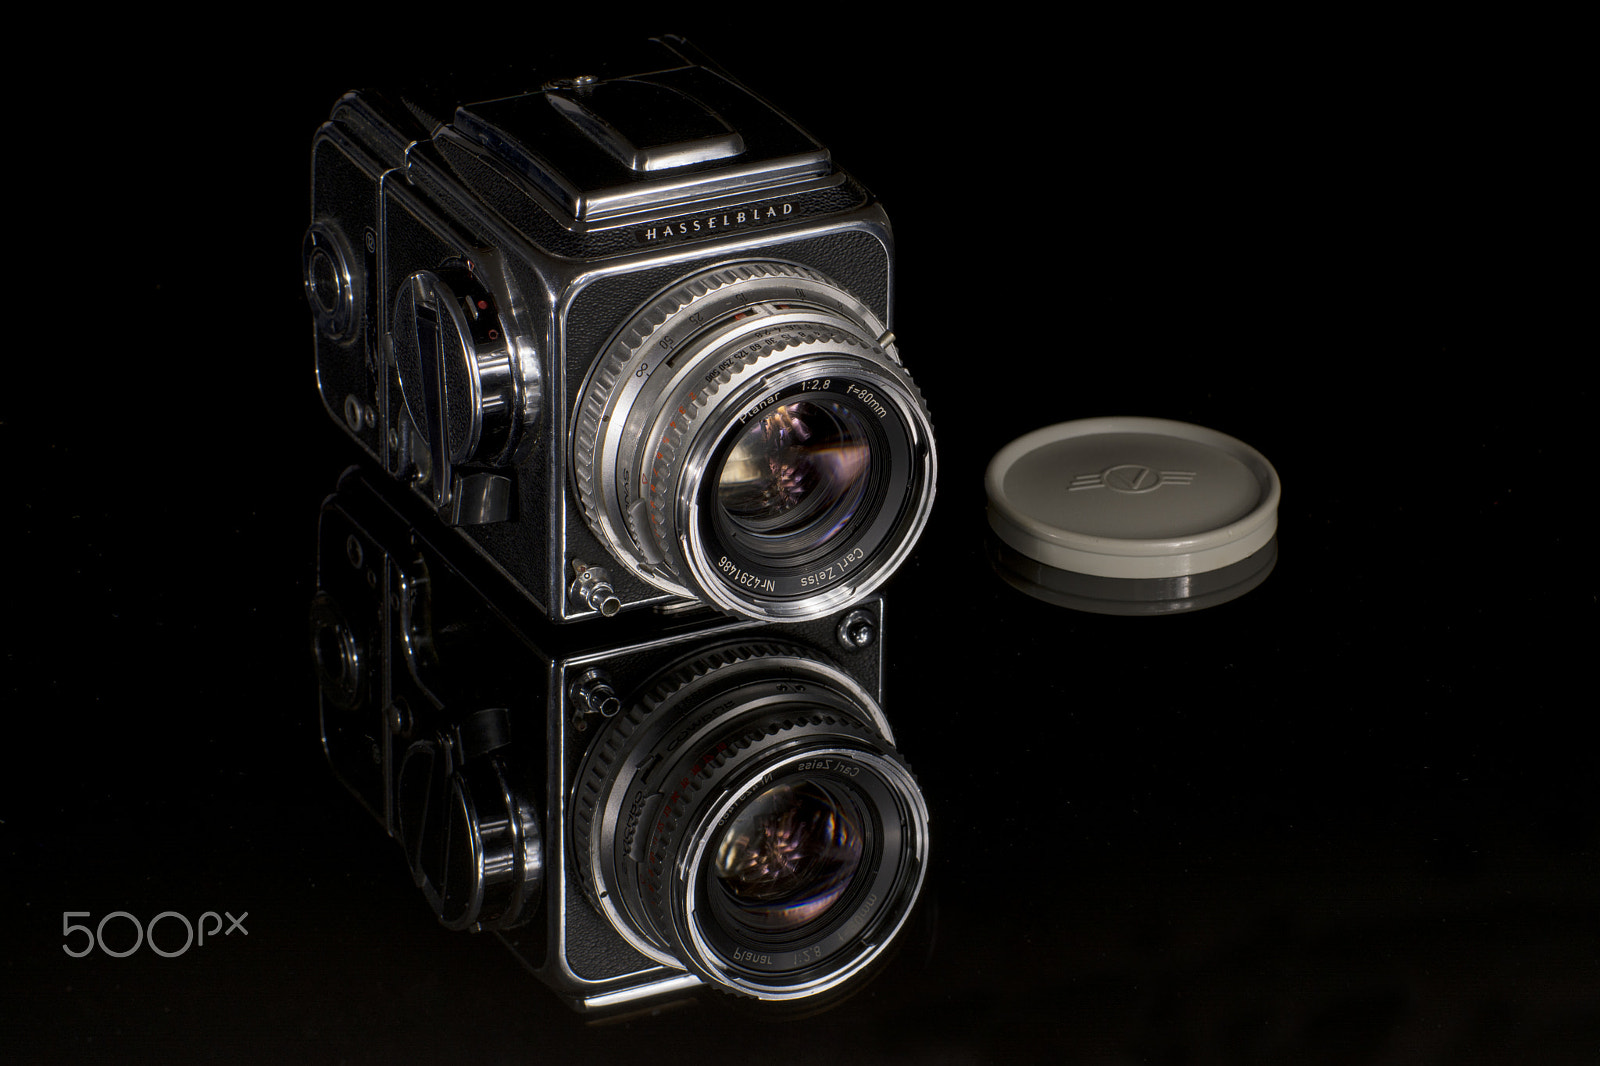 Nikon D7100 + Nikon AF-S Nikkor 70-300mm F4.5-5.6G VR sample photo. Hasselblad 500c photography